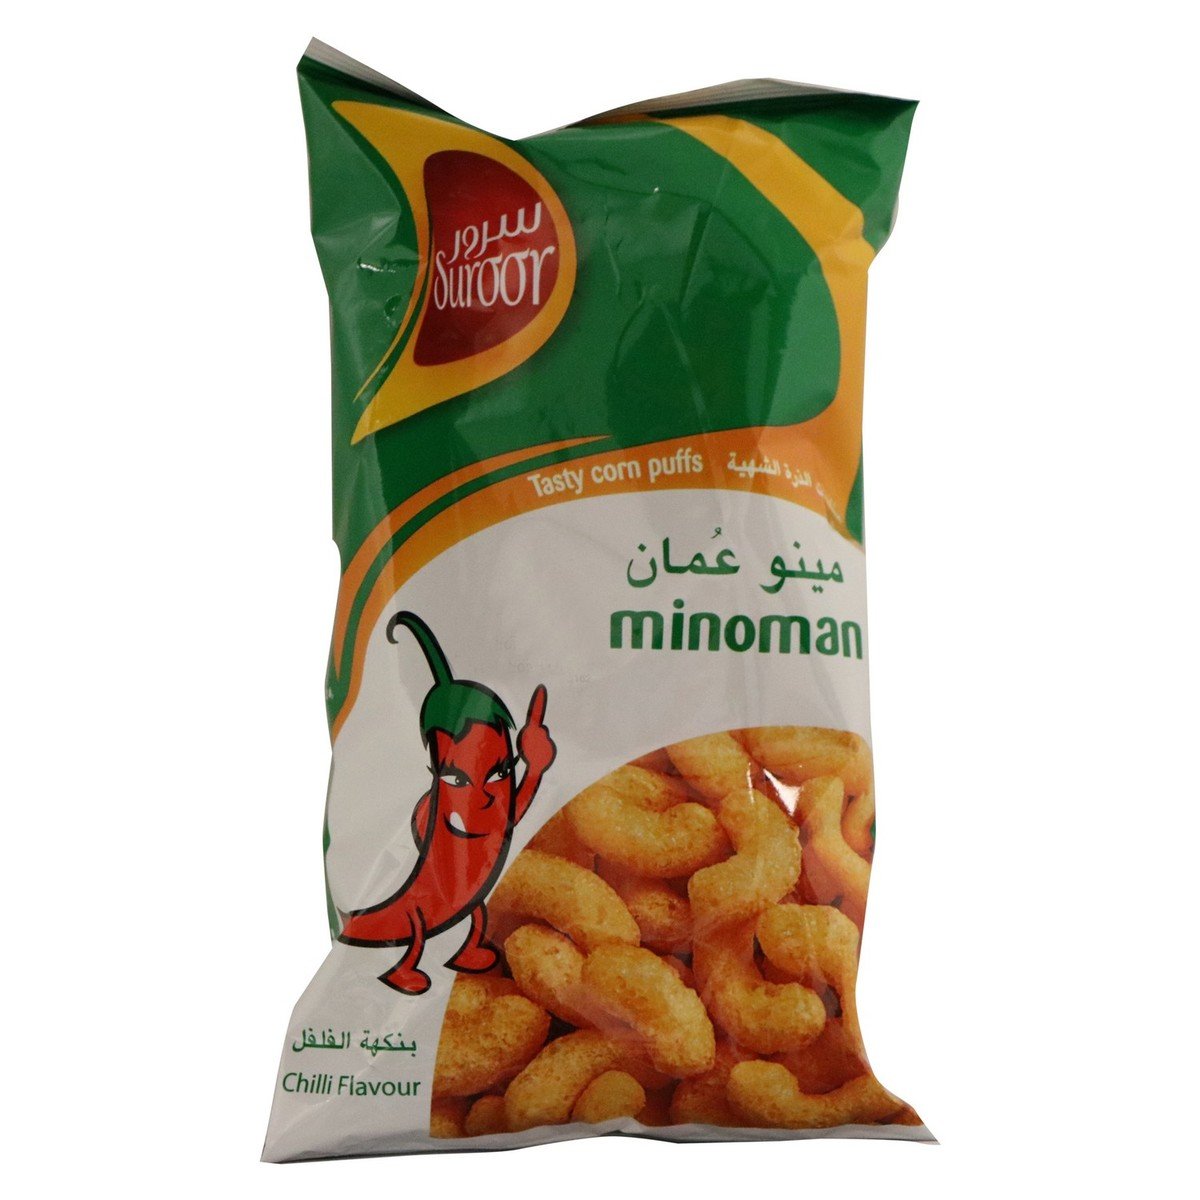 Suroor Minoman Tasty Corn Puffs Chilli Flavour 12 x 22 g